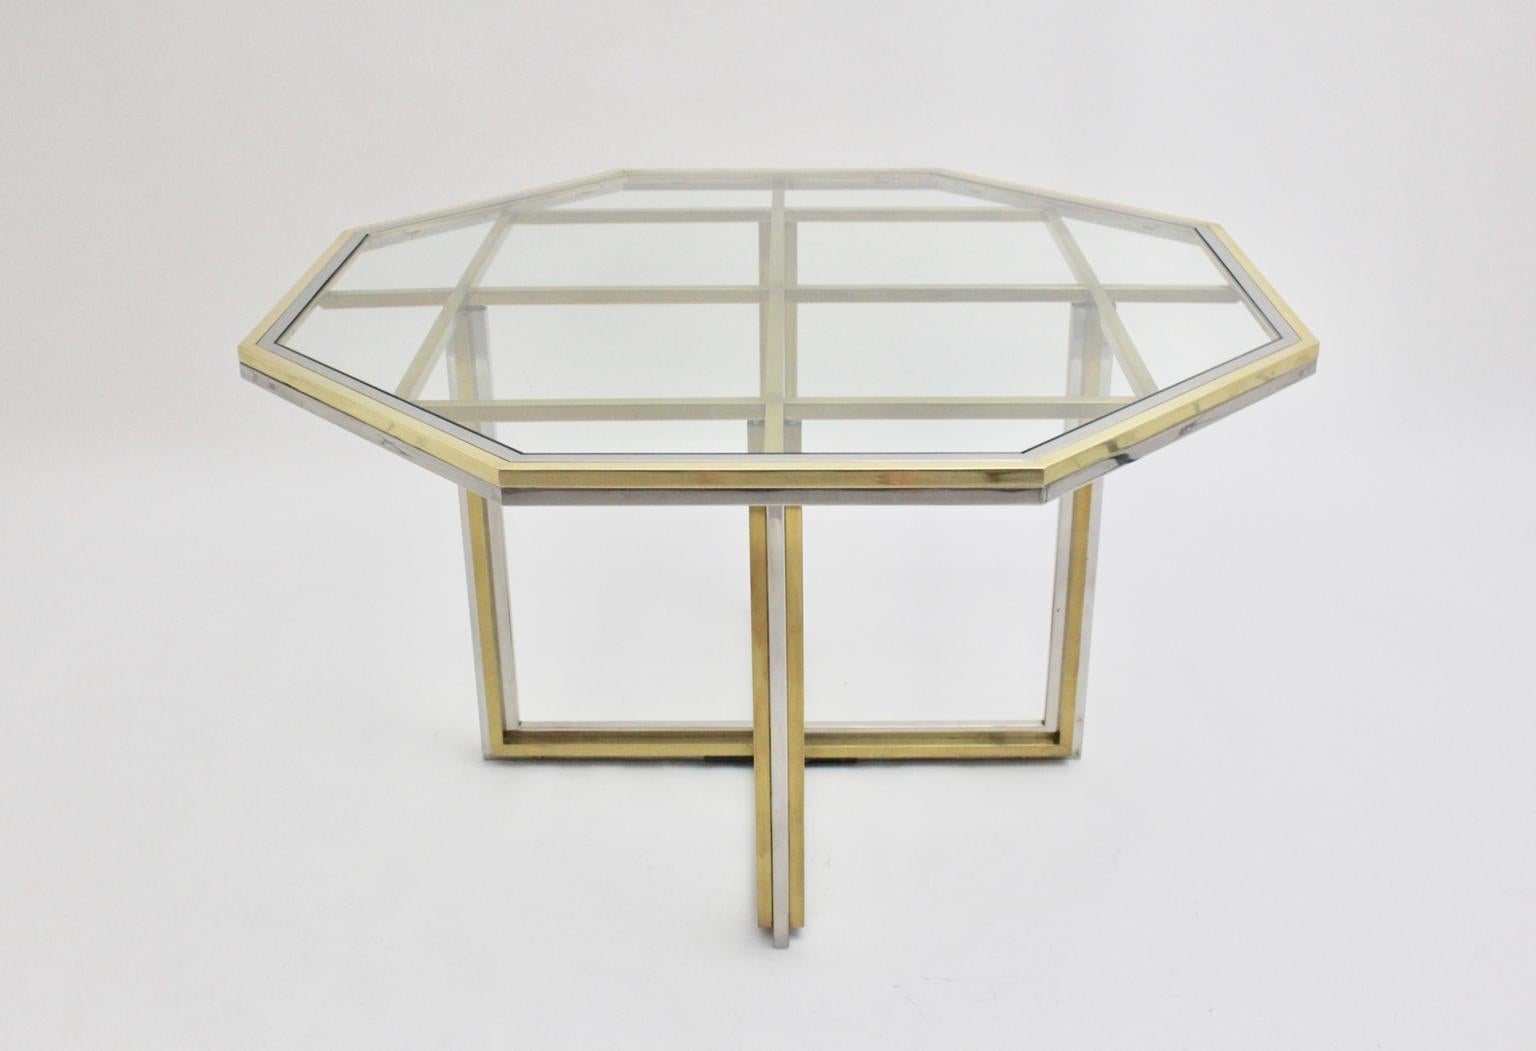 Ein Romeo Rega Stil modernistischen Messing und verchromt Vintage Esstisch oder Mitte Tisch, 1970er Jahre, Italien.
Der achteckige Mid-Century Modern Vintage Ess- oder Mitteltisch im Stil von Romeo Rega wurde aus Messing und verchromtem Metall